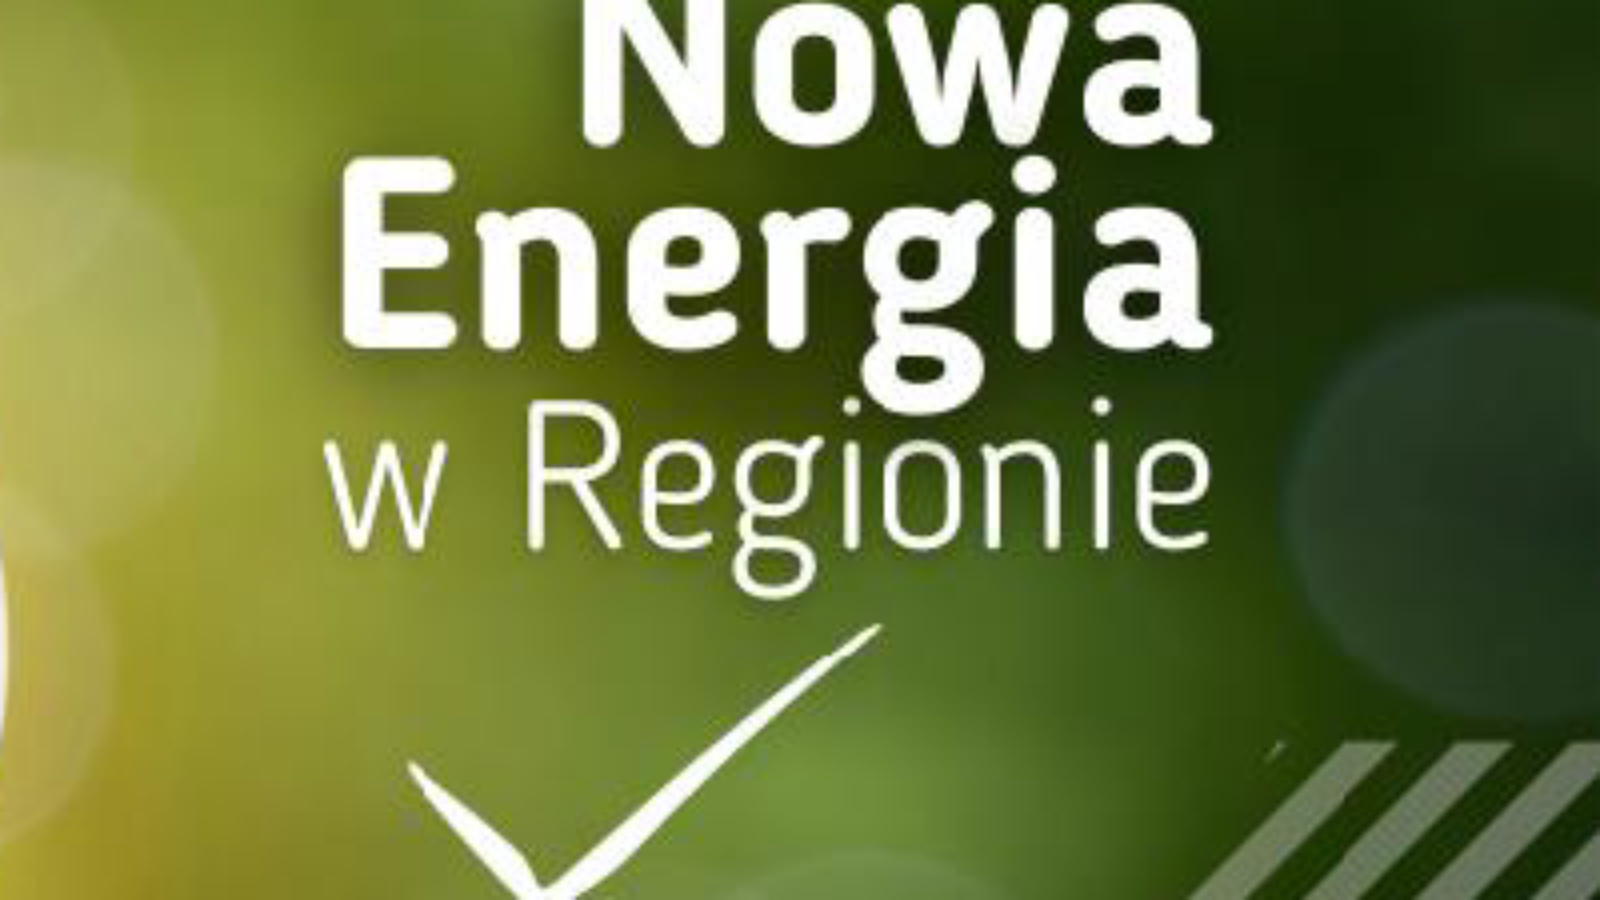 Nowa Energia w regionie